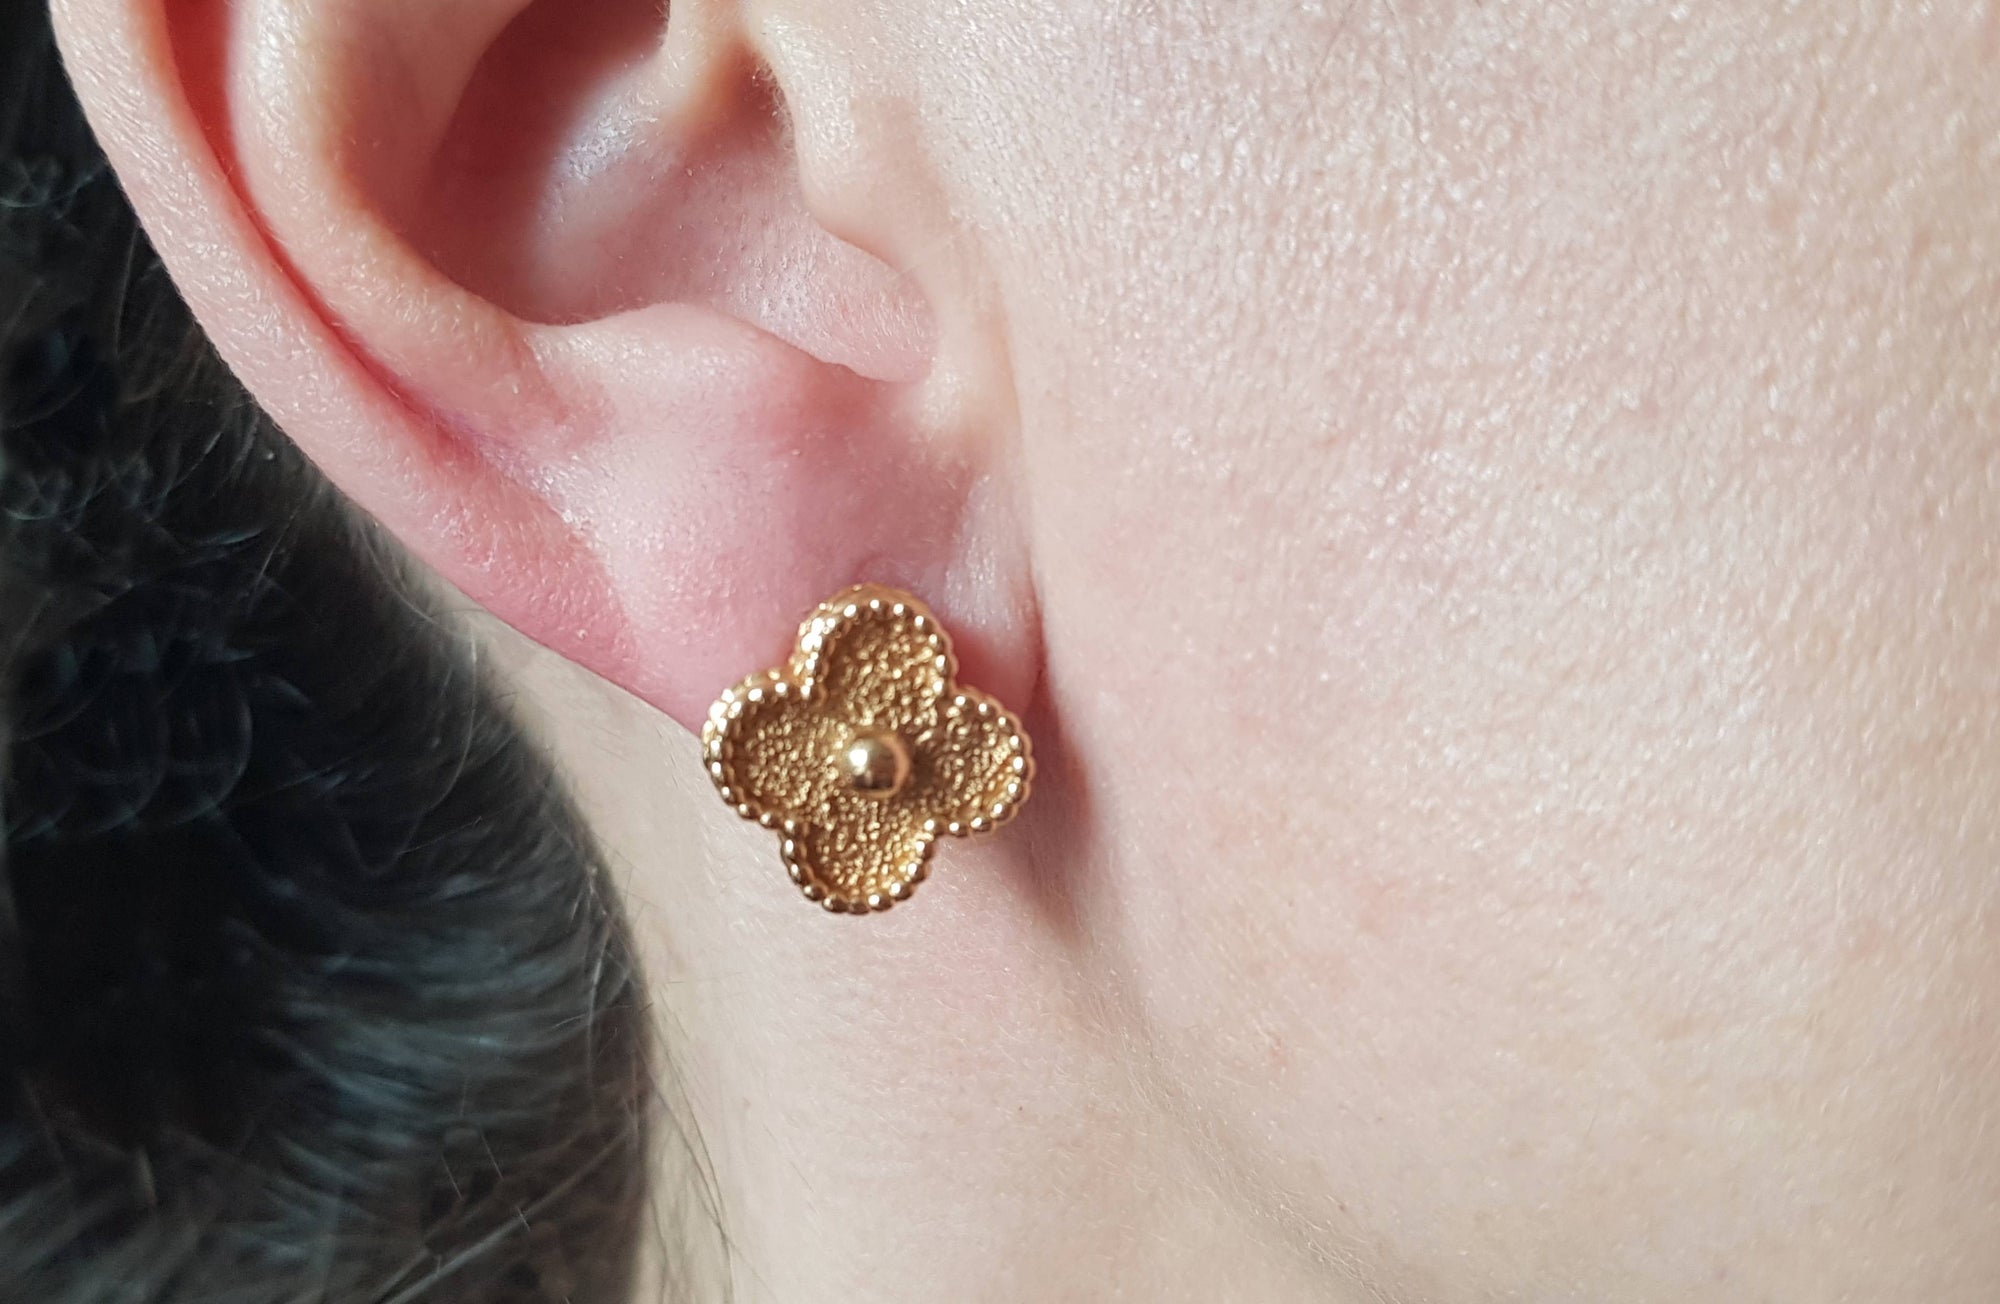 Van Cleef & Arpels Vintage Alhambra Earrings in 18k Gold